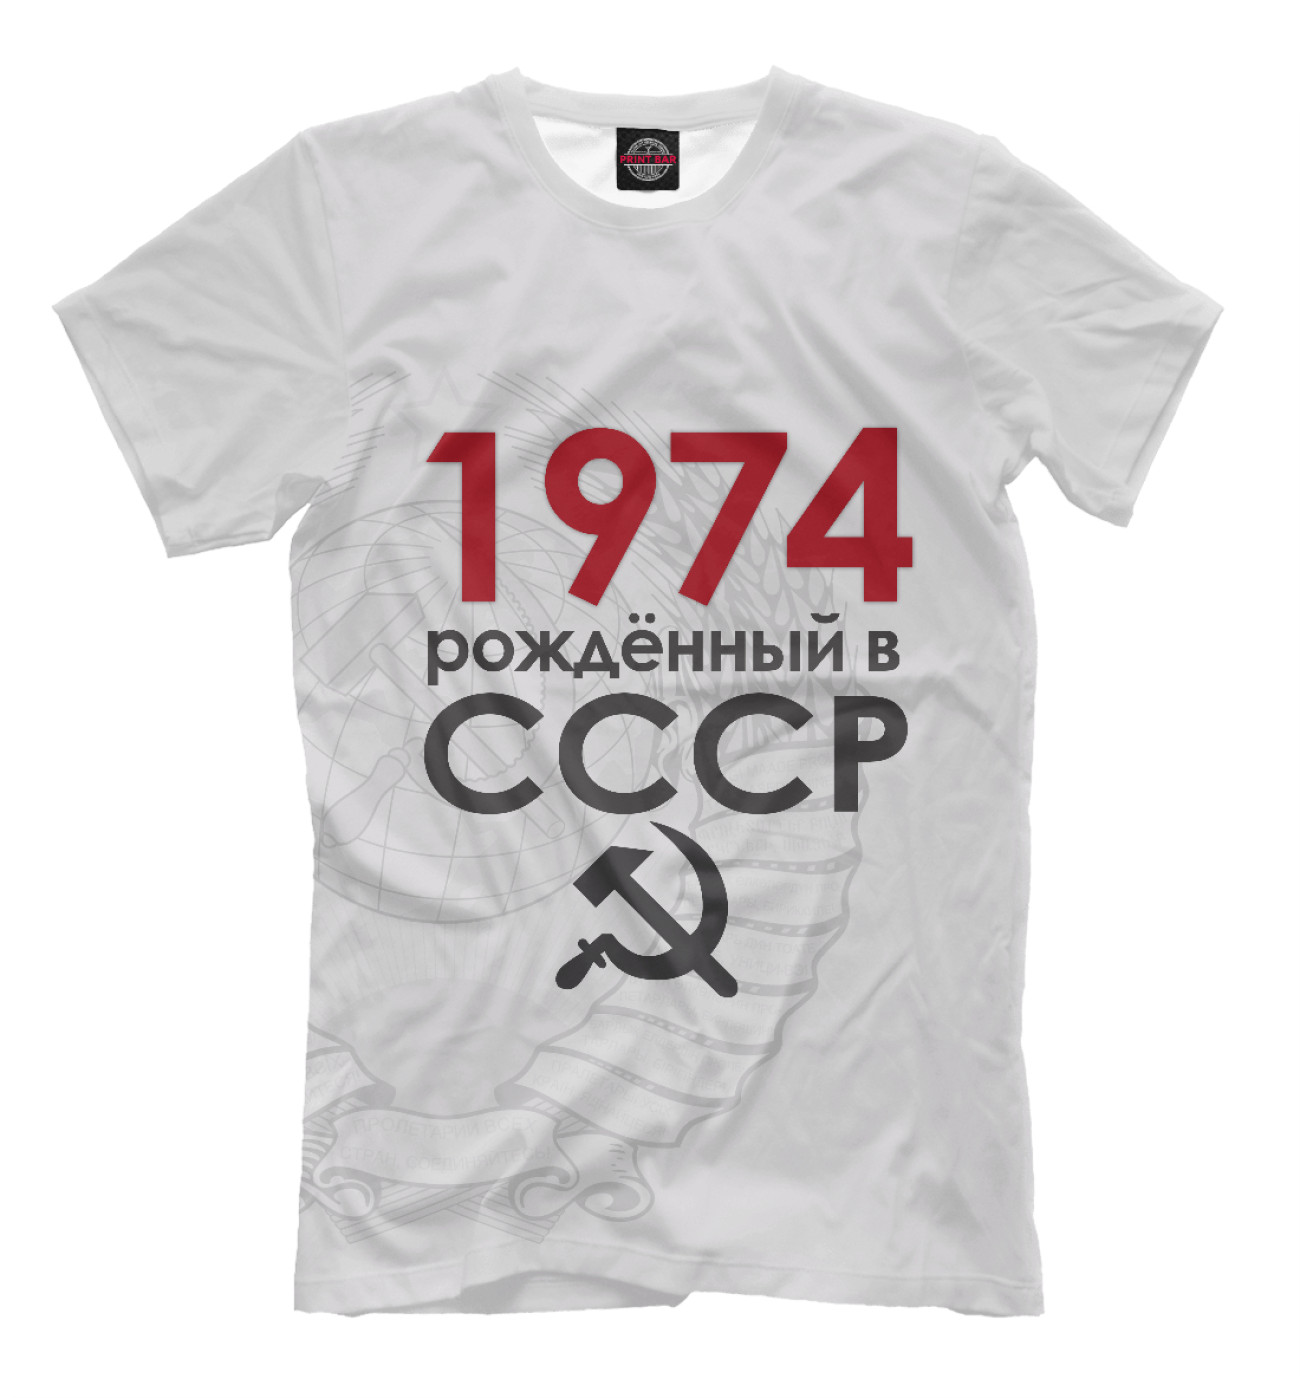 Мужская Футболка Рожденный в СССР 1974, артикул: DSC-864879-fut-2